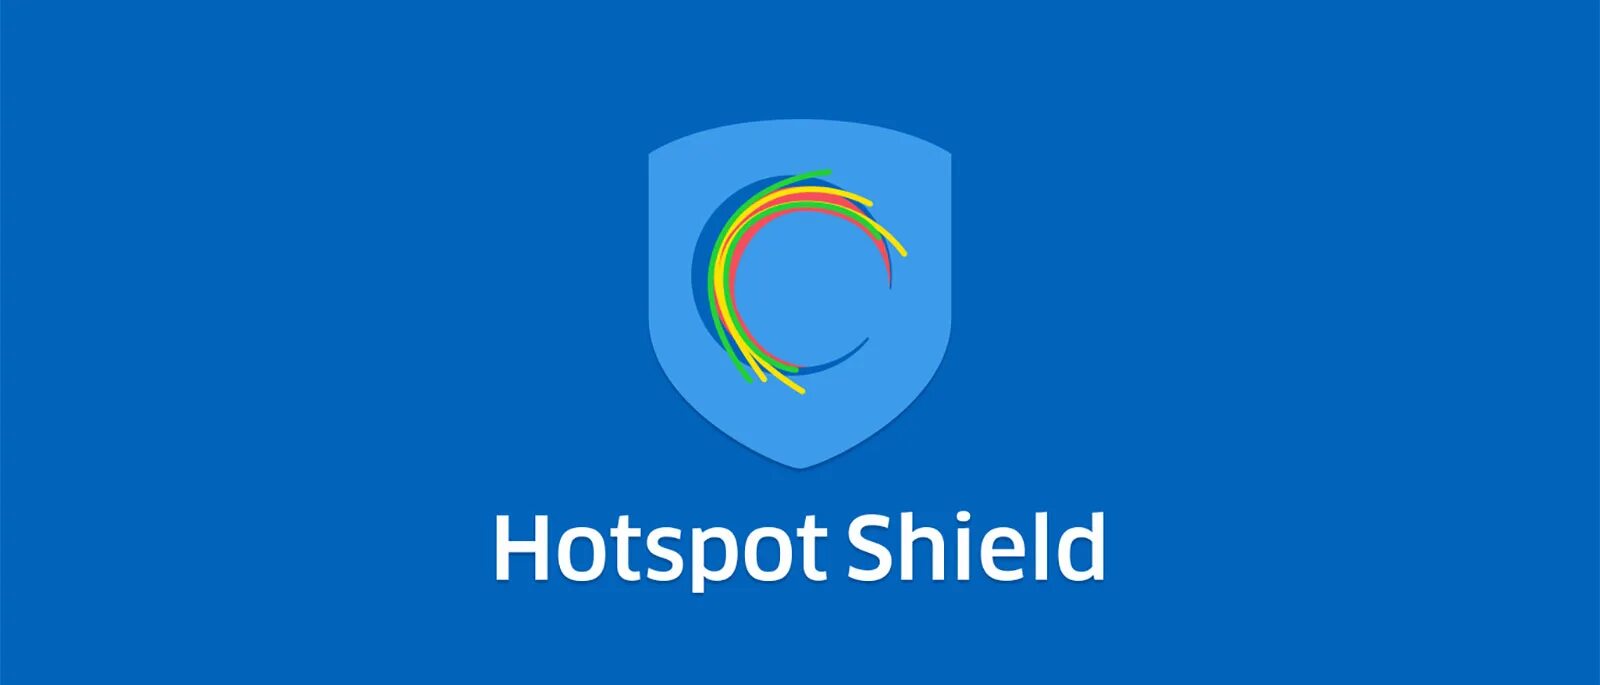 Hotspot Shield. Hotspot Shield Elite. Hotspot Shield 11.1.1 Elite. 6. Hotspot Shield.